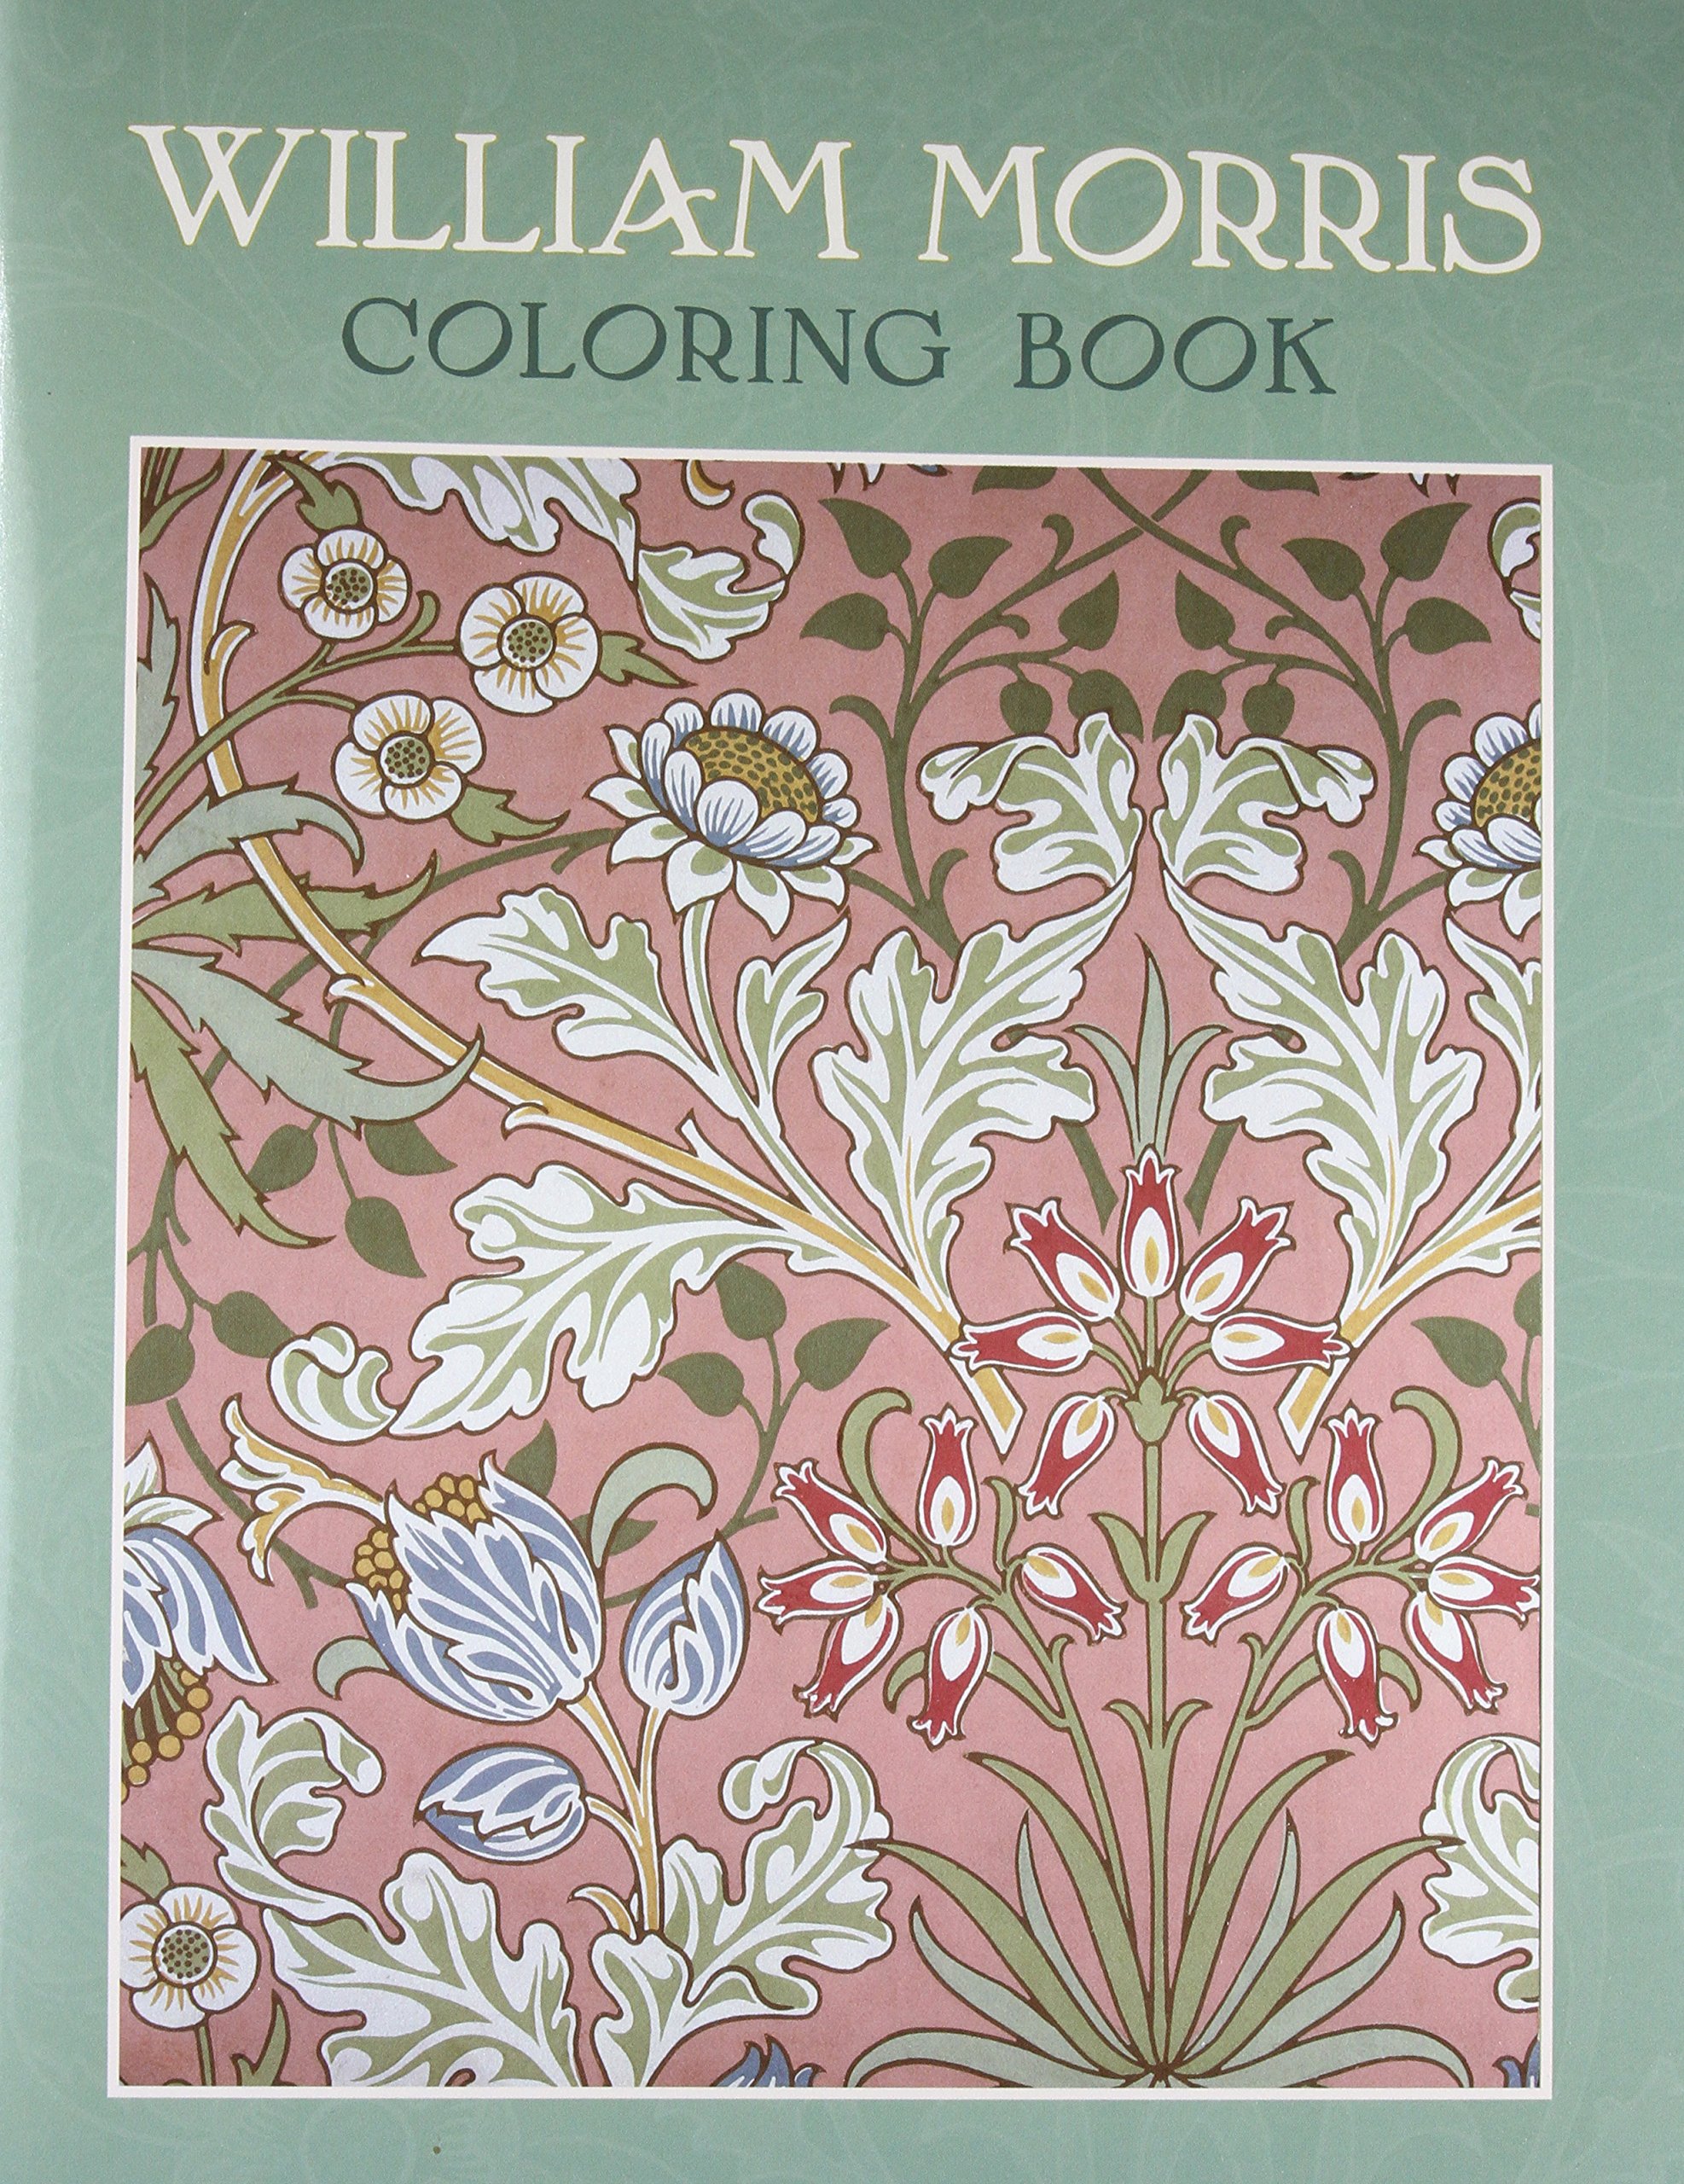 William Morris Coloring Book Brooklyn Museum of Art